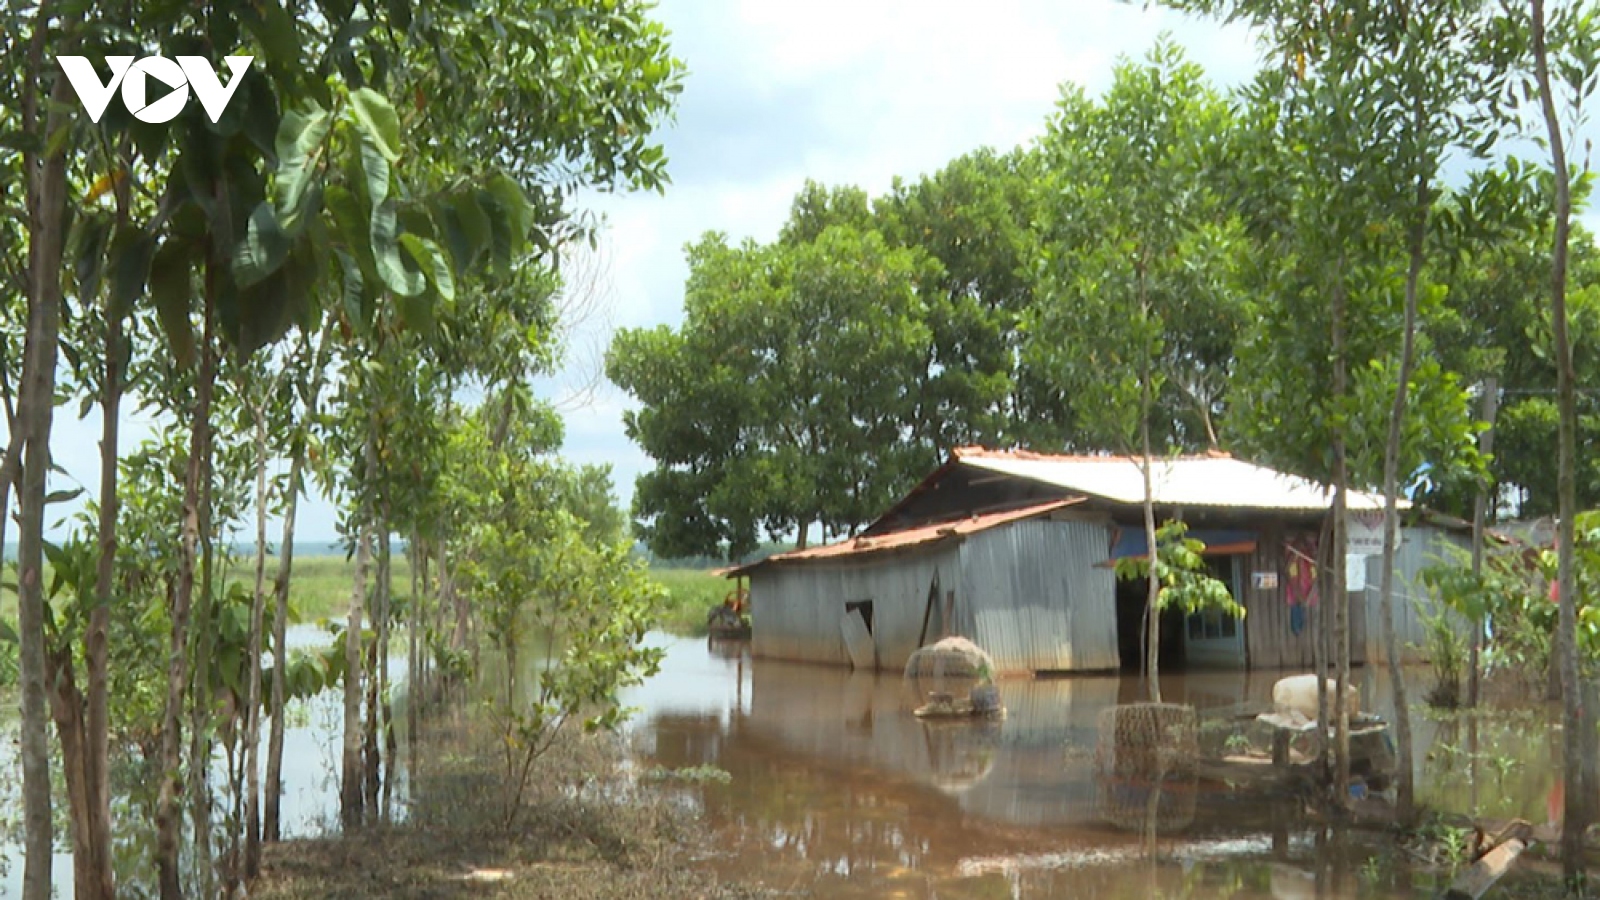 Doanh nghiệp "cầu cứu" vì bị lấn chiếm đất, lãnh đạo tỉnh Bình Phước chỉ đạo nóng